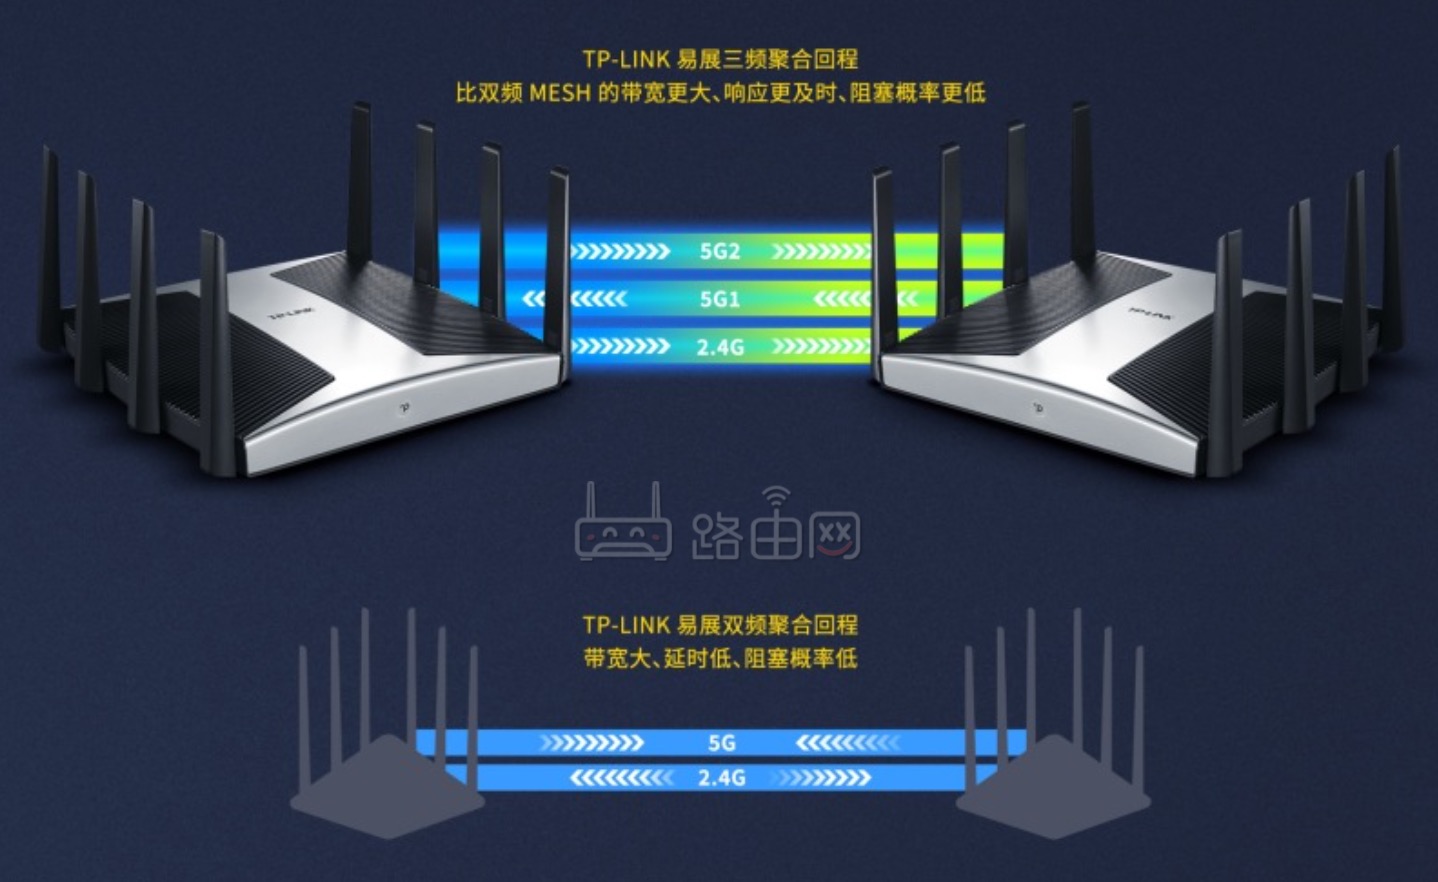 TP-LINK新款飞流路由器发布 三频10流 2.5G端口